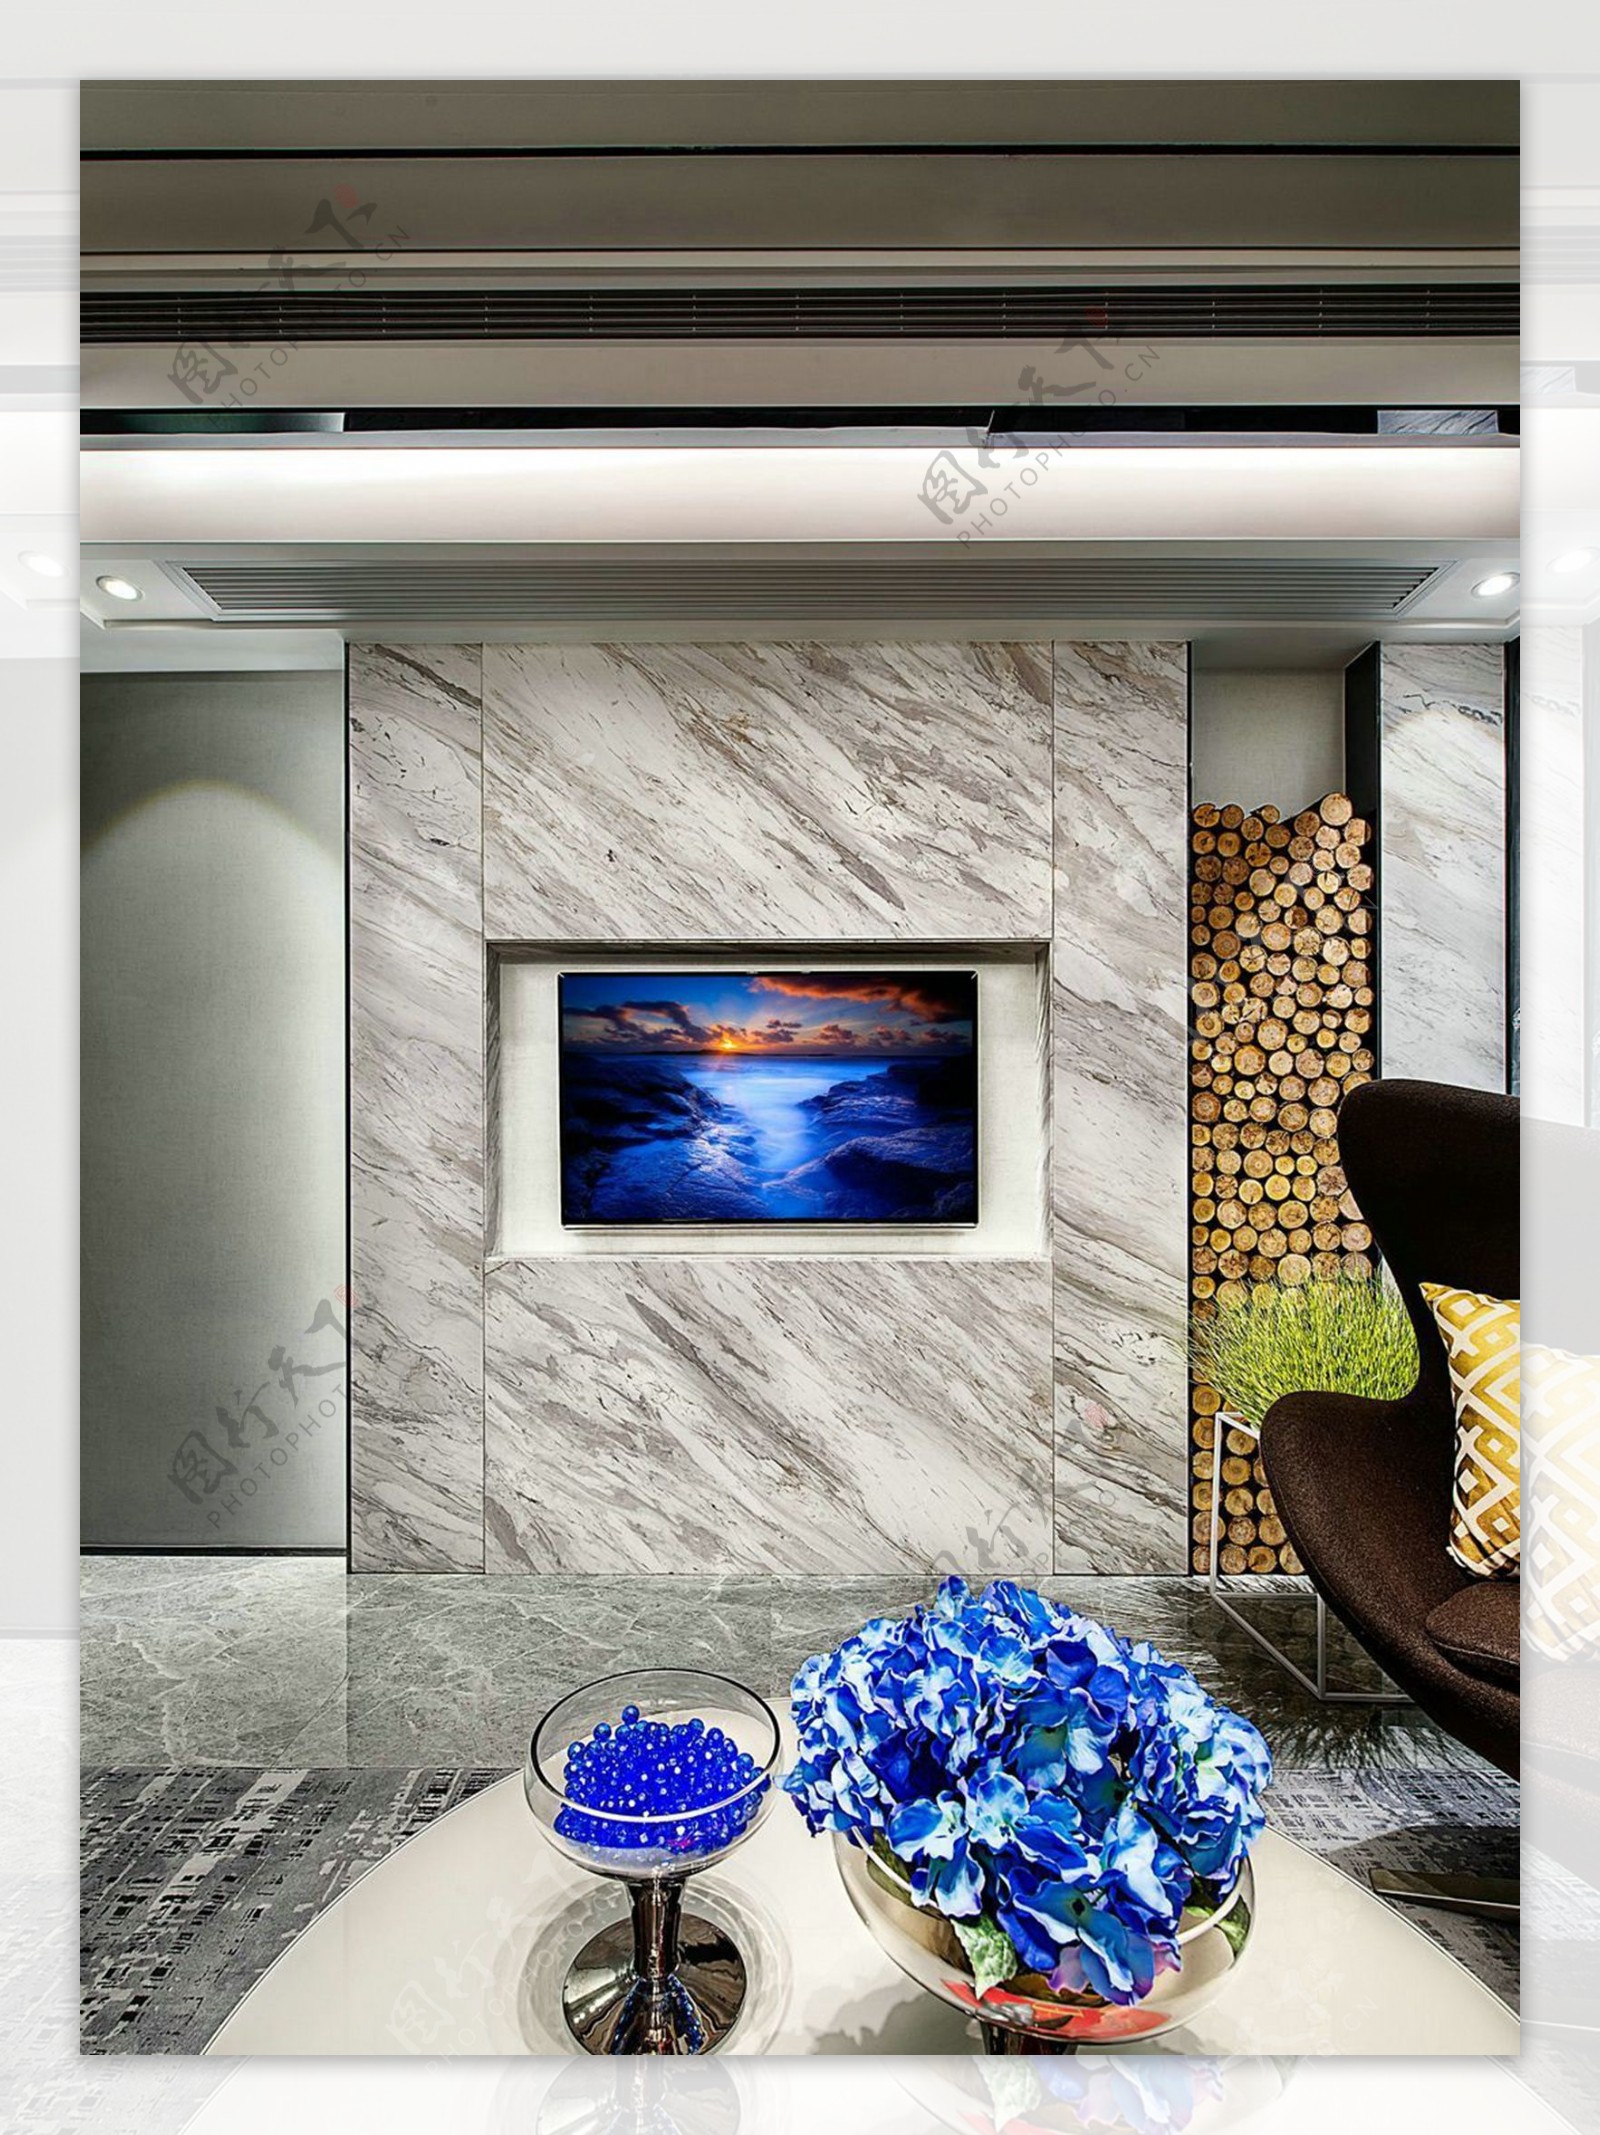 中式客厅灰色条纹大理石电视背景墙装修效果图